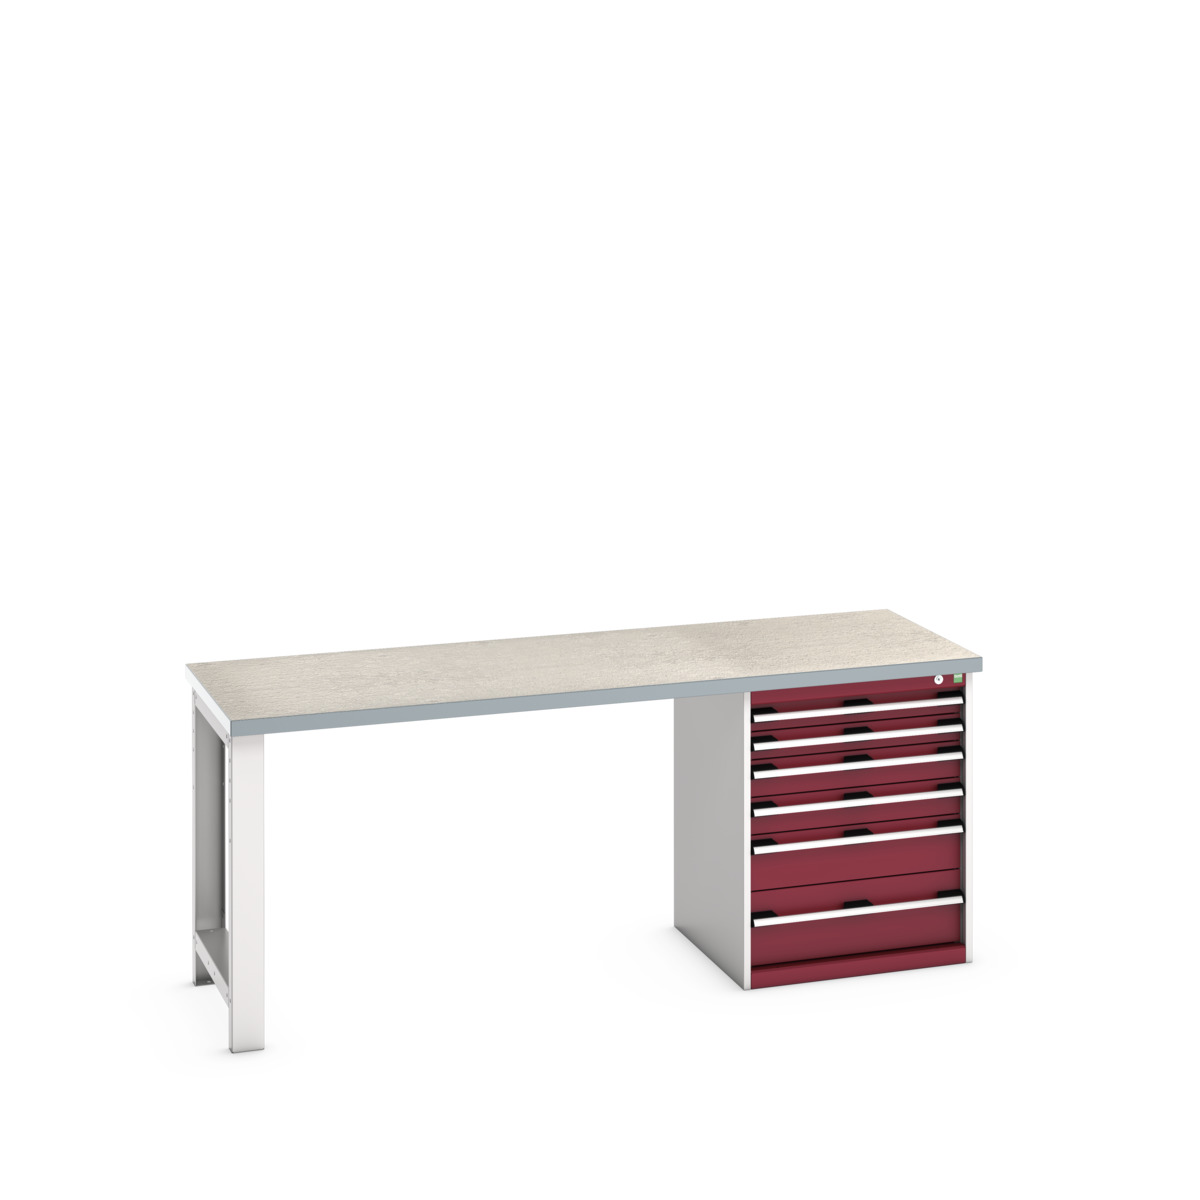 41003237.24V - cubio pedestal bench (lino)